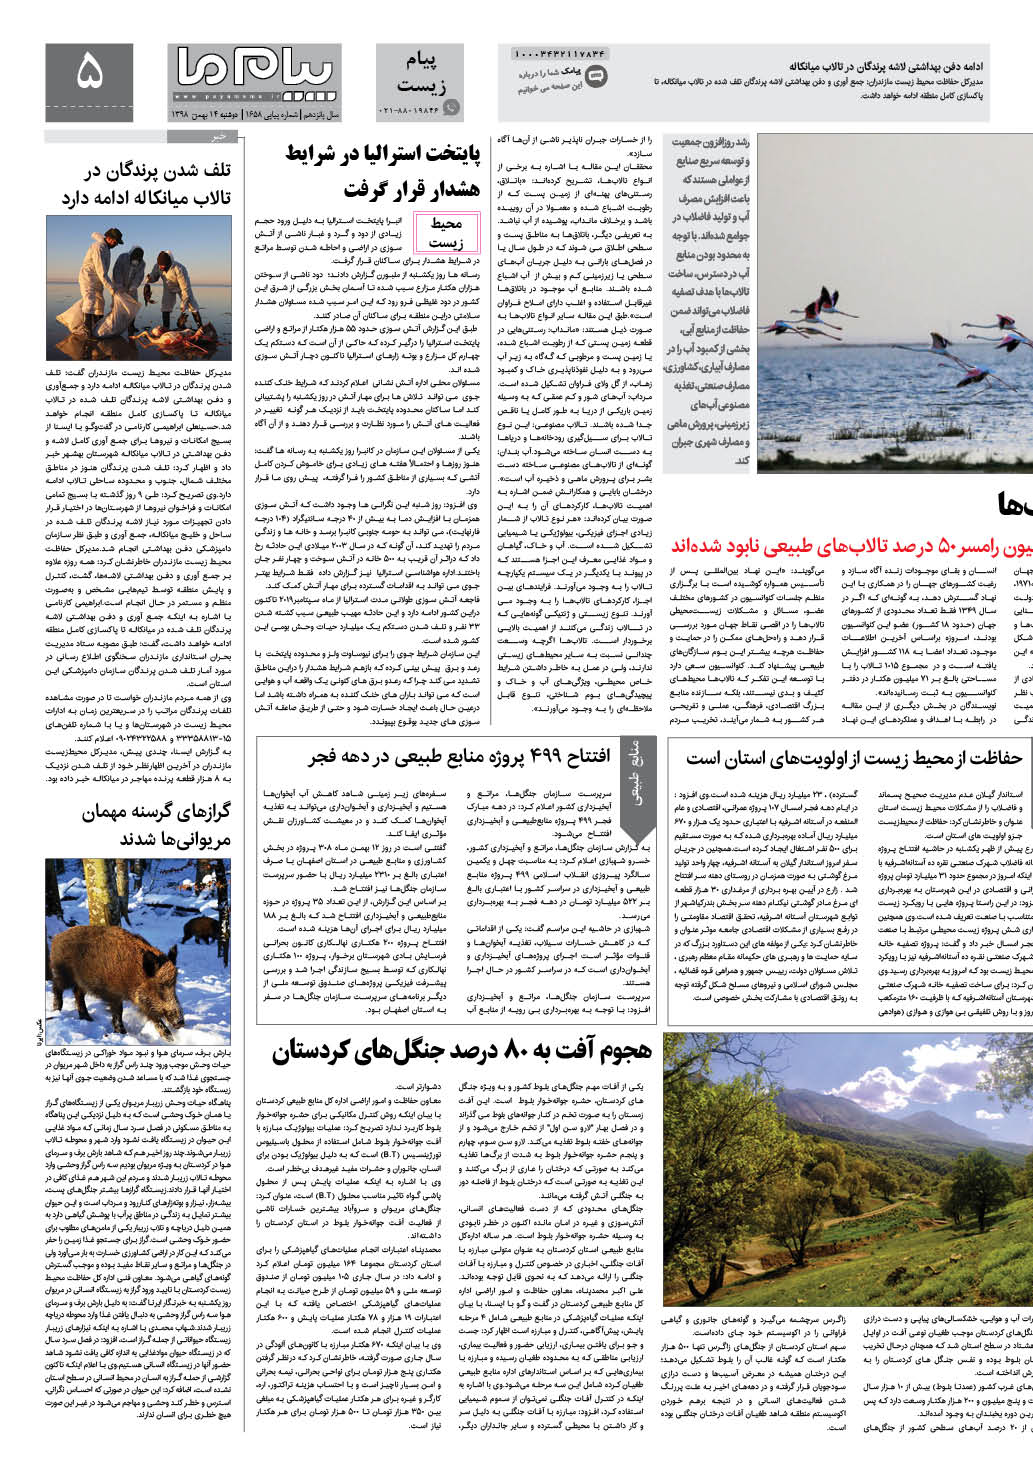 صفحه پیام زیست شماره 1658 روزنامه پیام ما